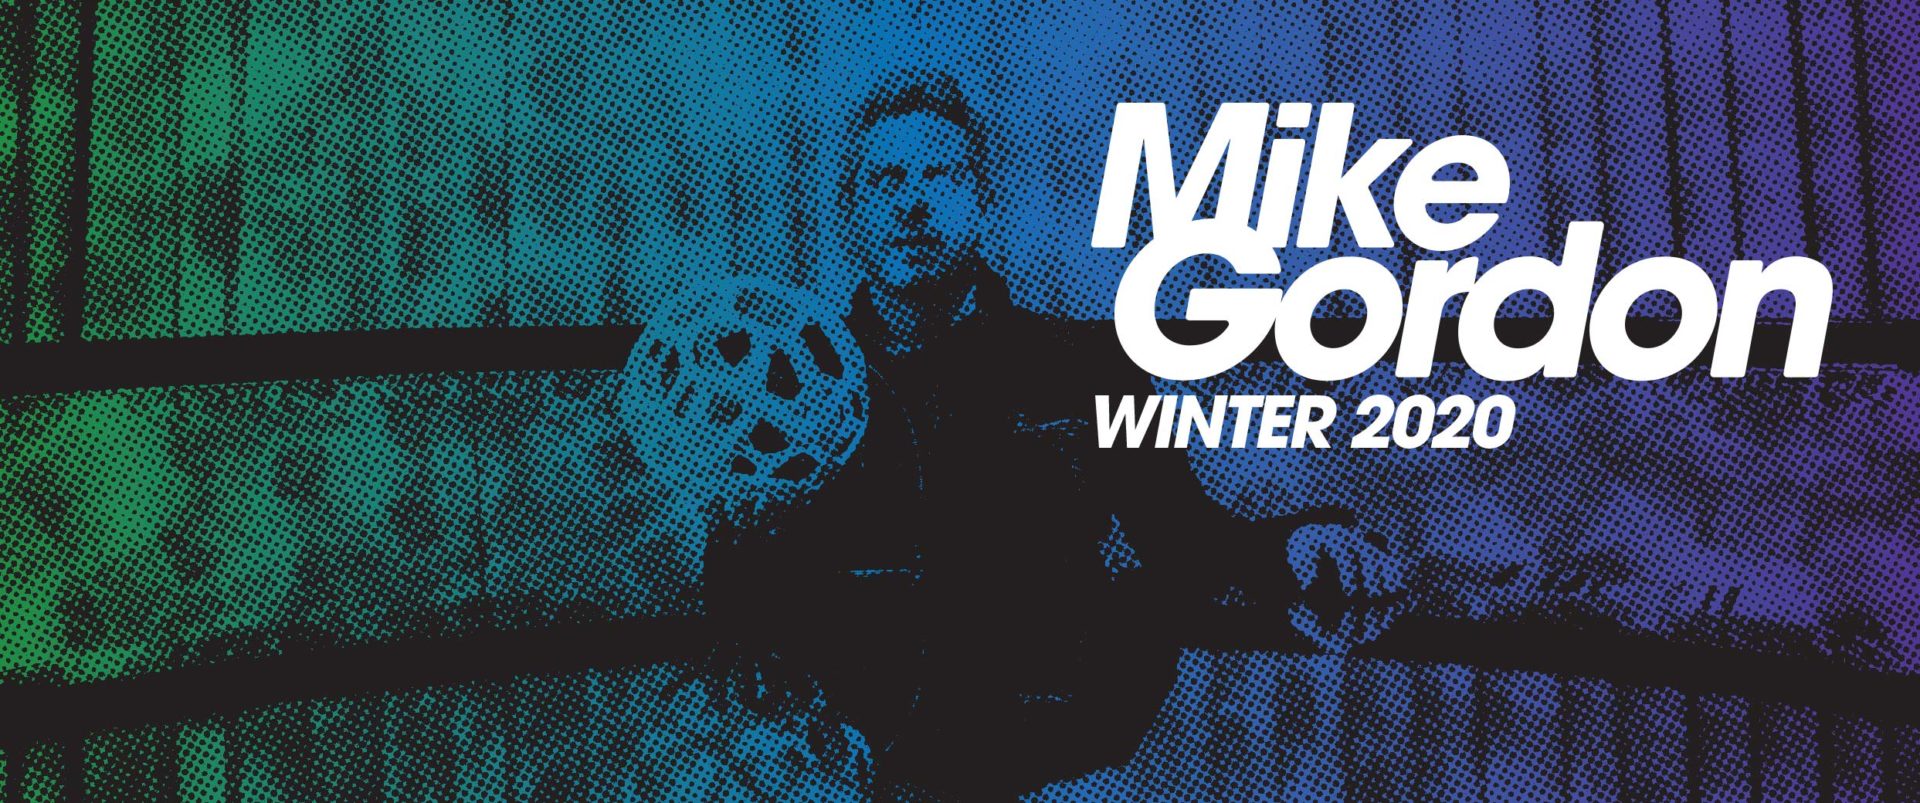 Mike Gordon Announces 2020 Tour Dates LIVE music blog